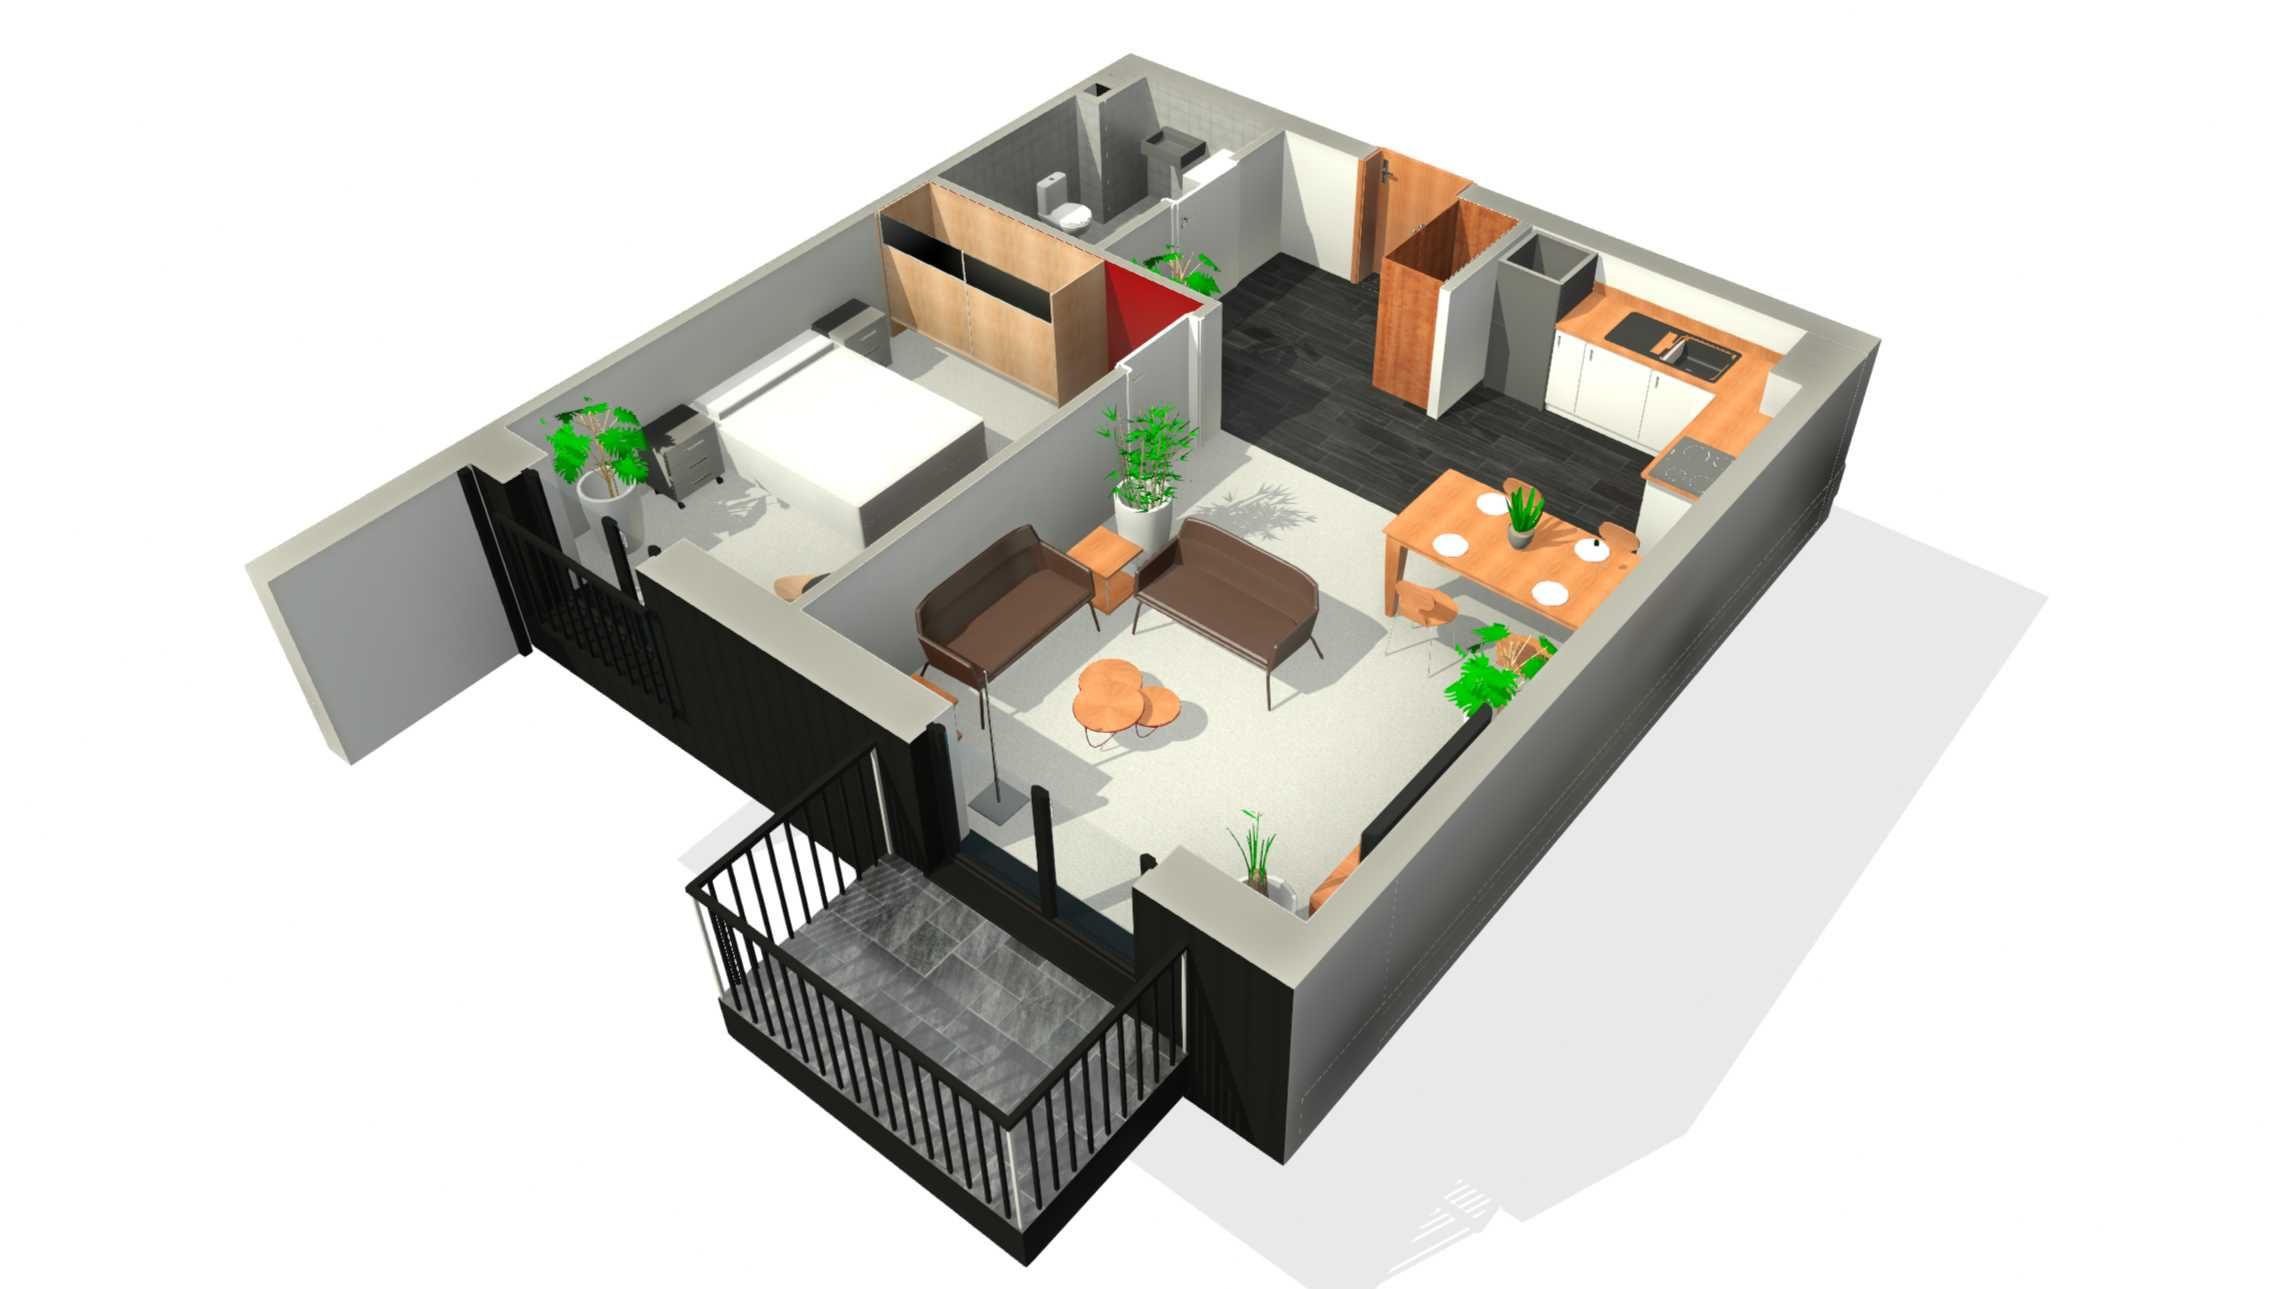 Nowe mieszkanie - stan deweloperski - Nakło Gold Light - 50 m2